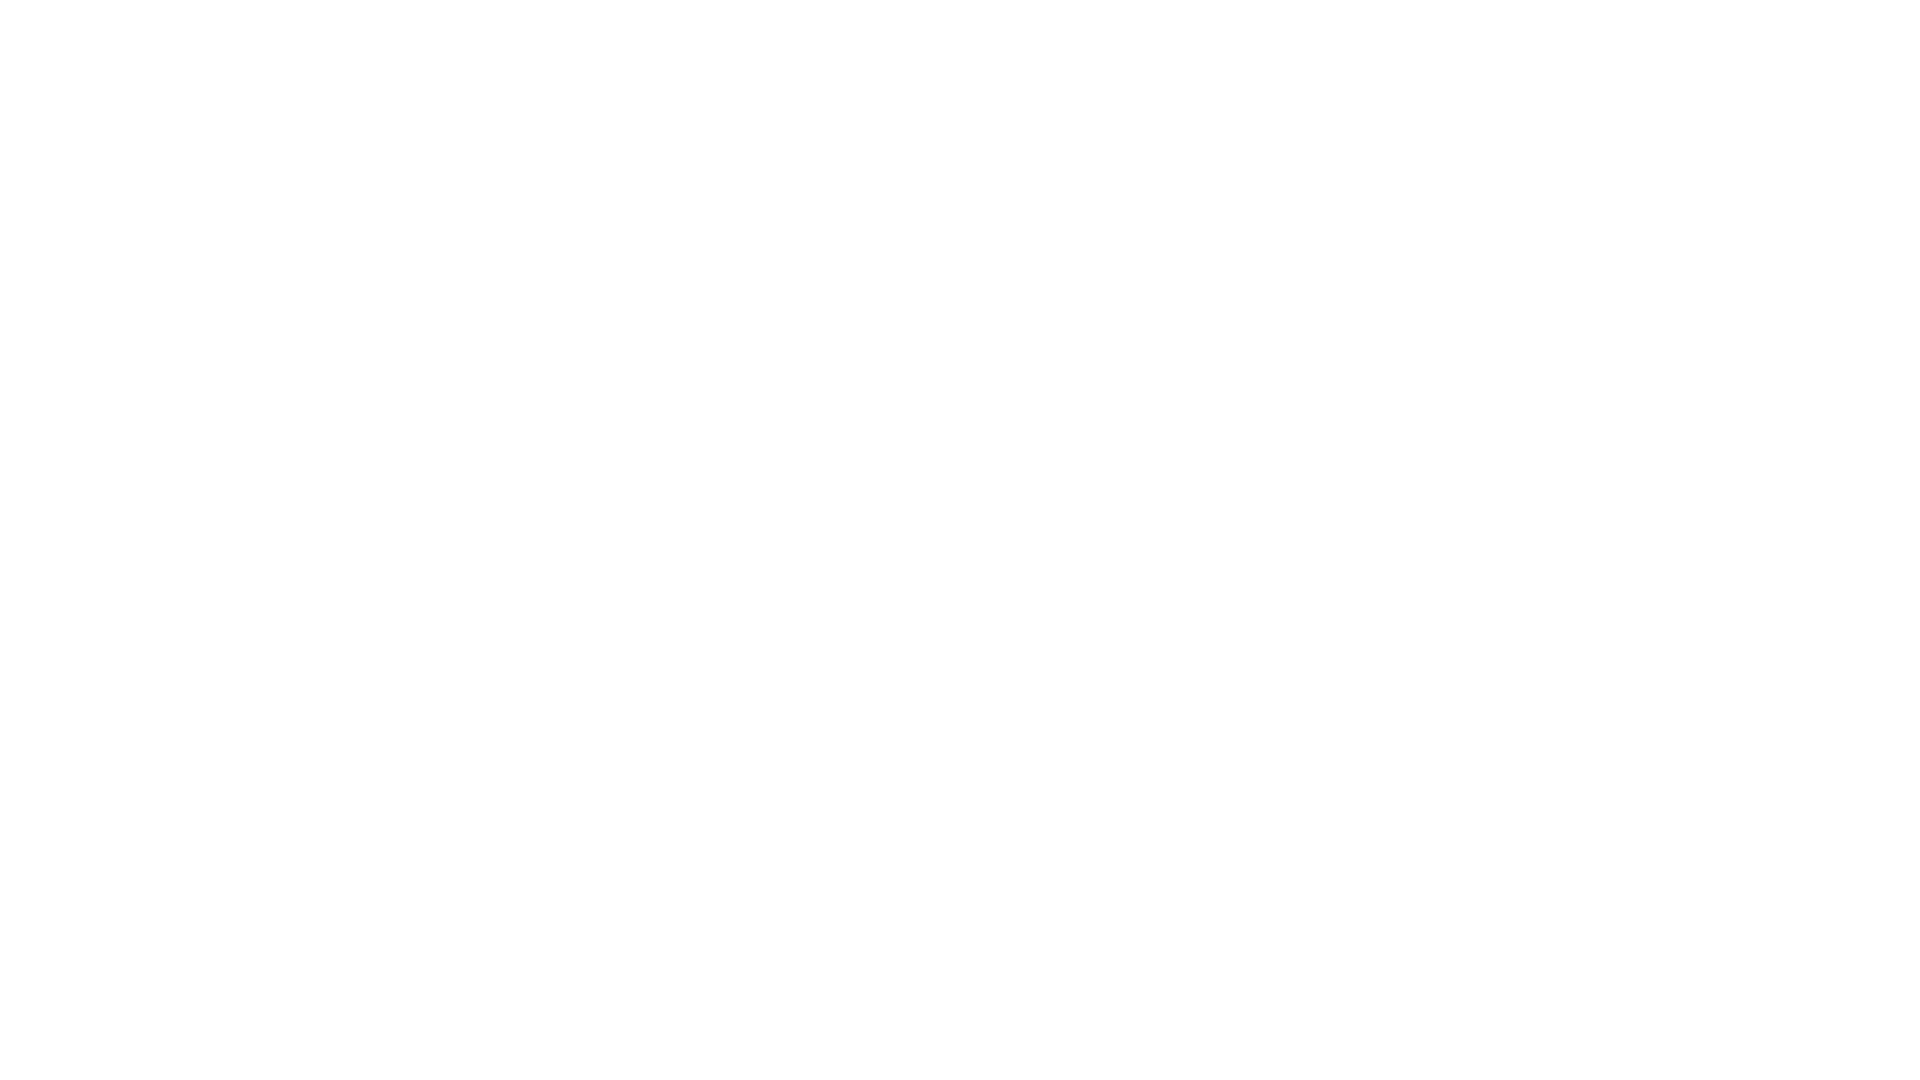 1913 MEDIA